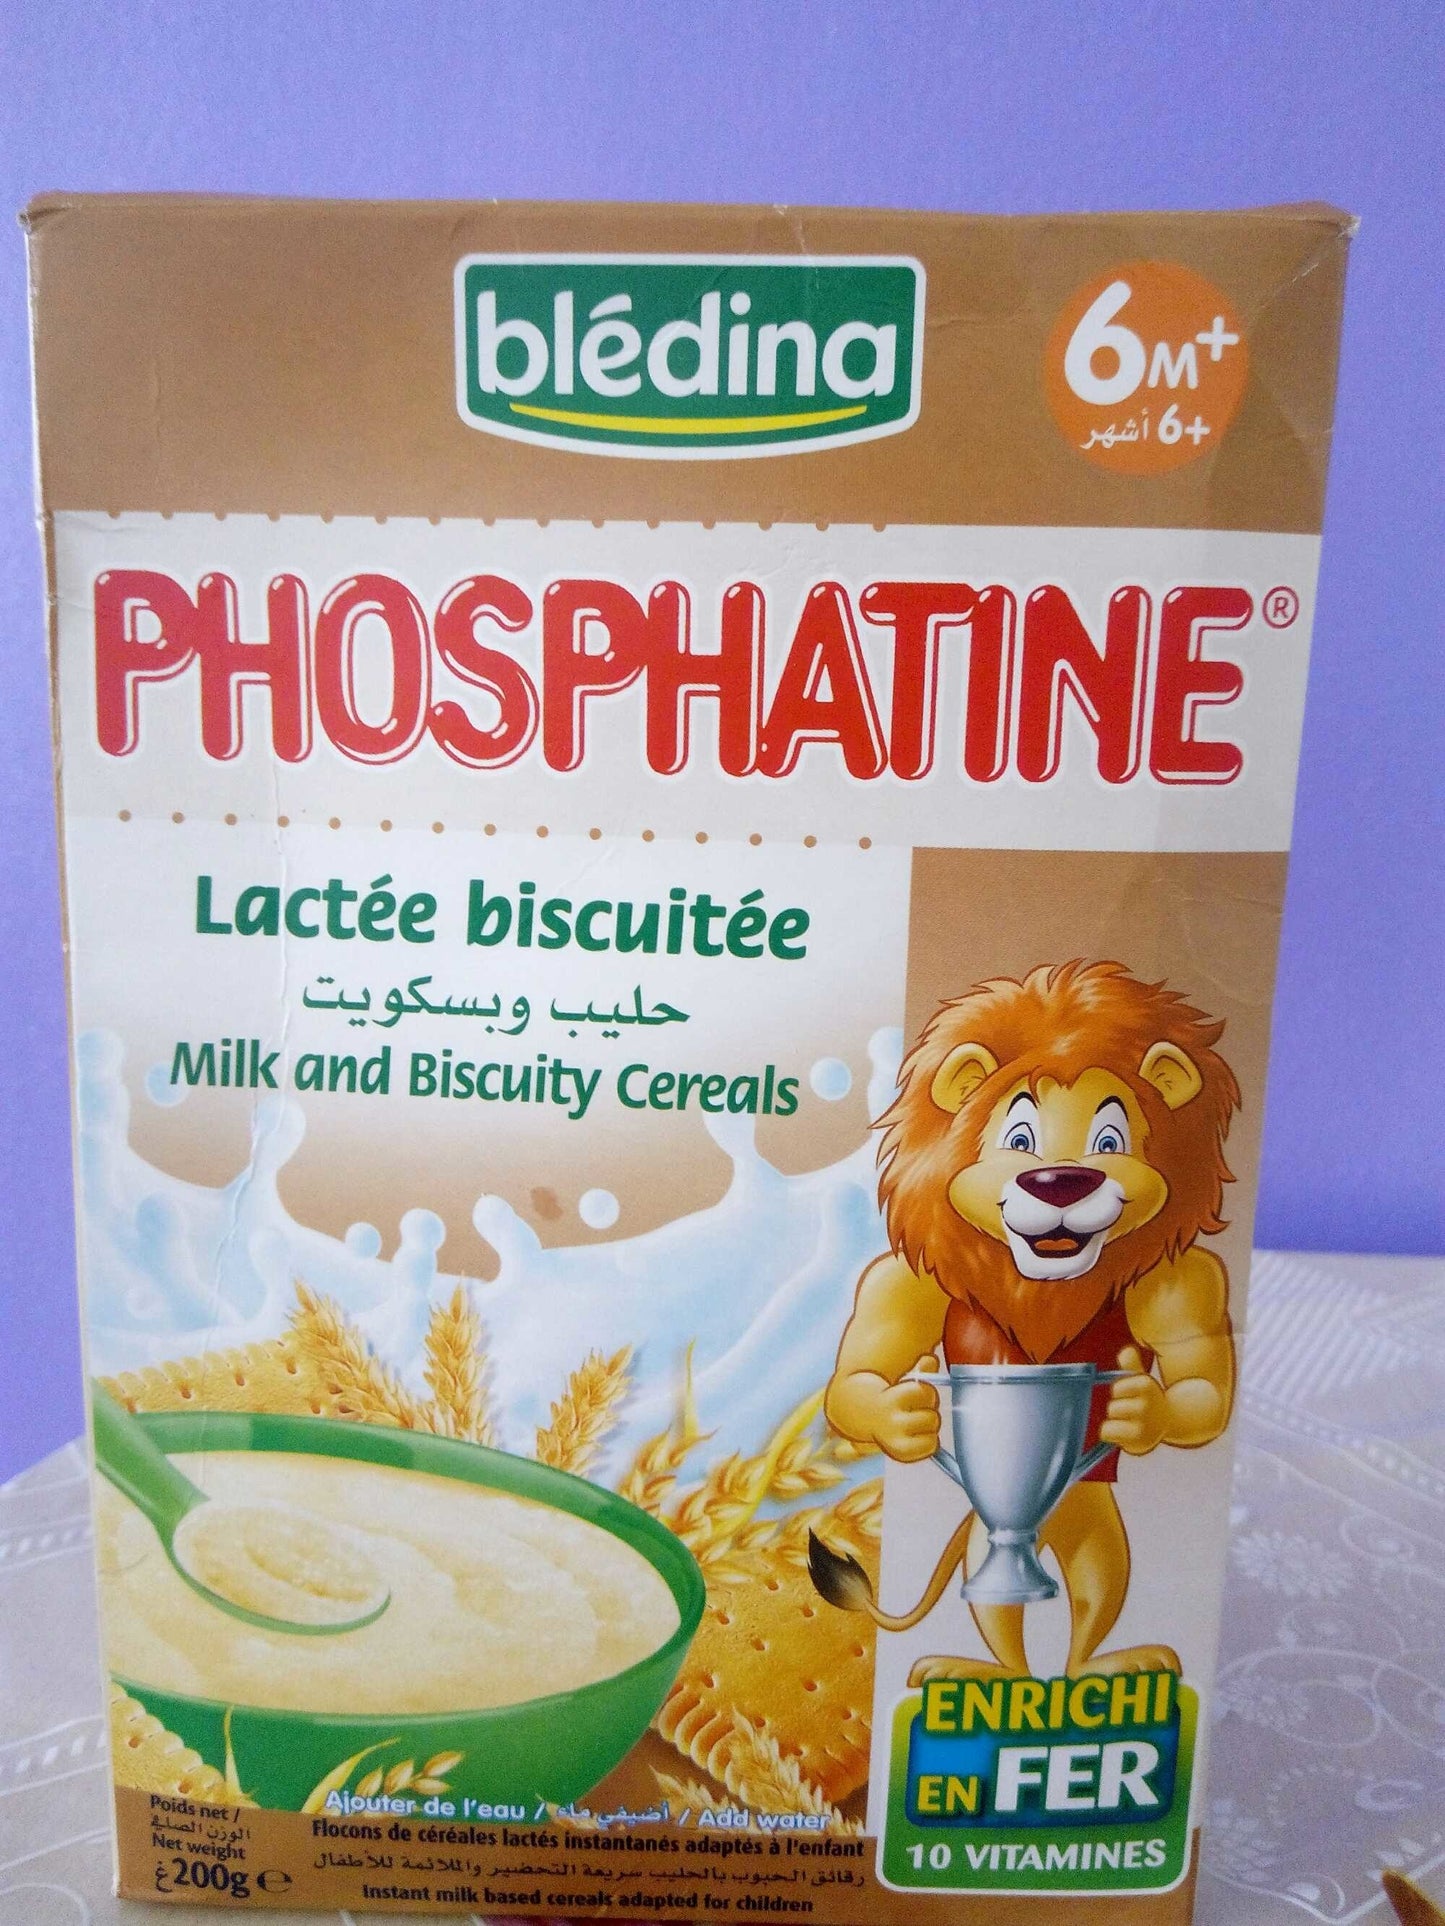 Phosphatine lactée biscuitée